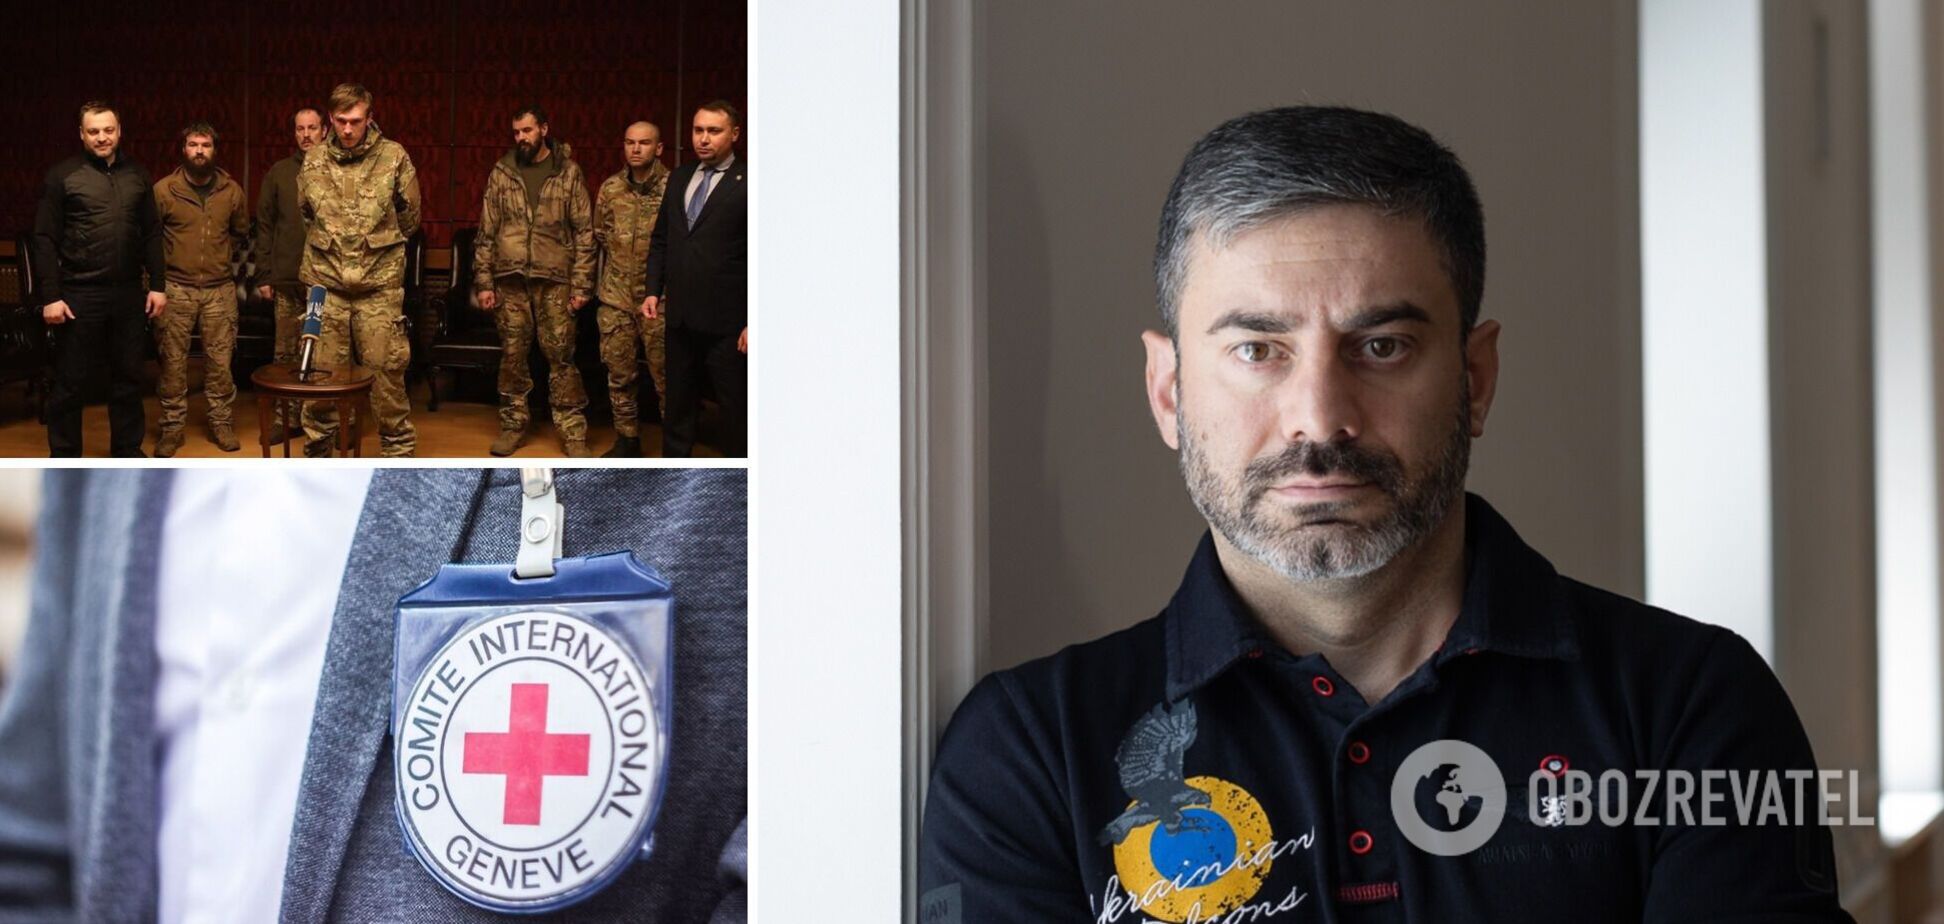 Жоден зі звільнених із полону українців ні разу не бачив представників Червоного Хреста, – омбудсмен